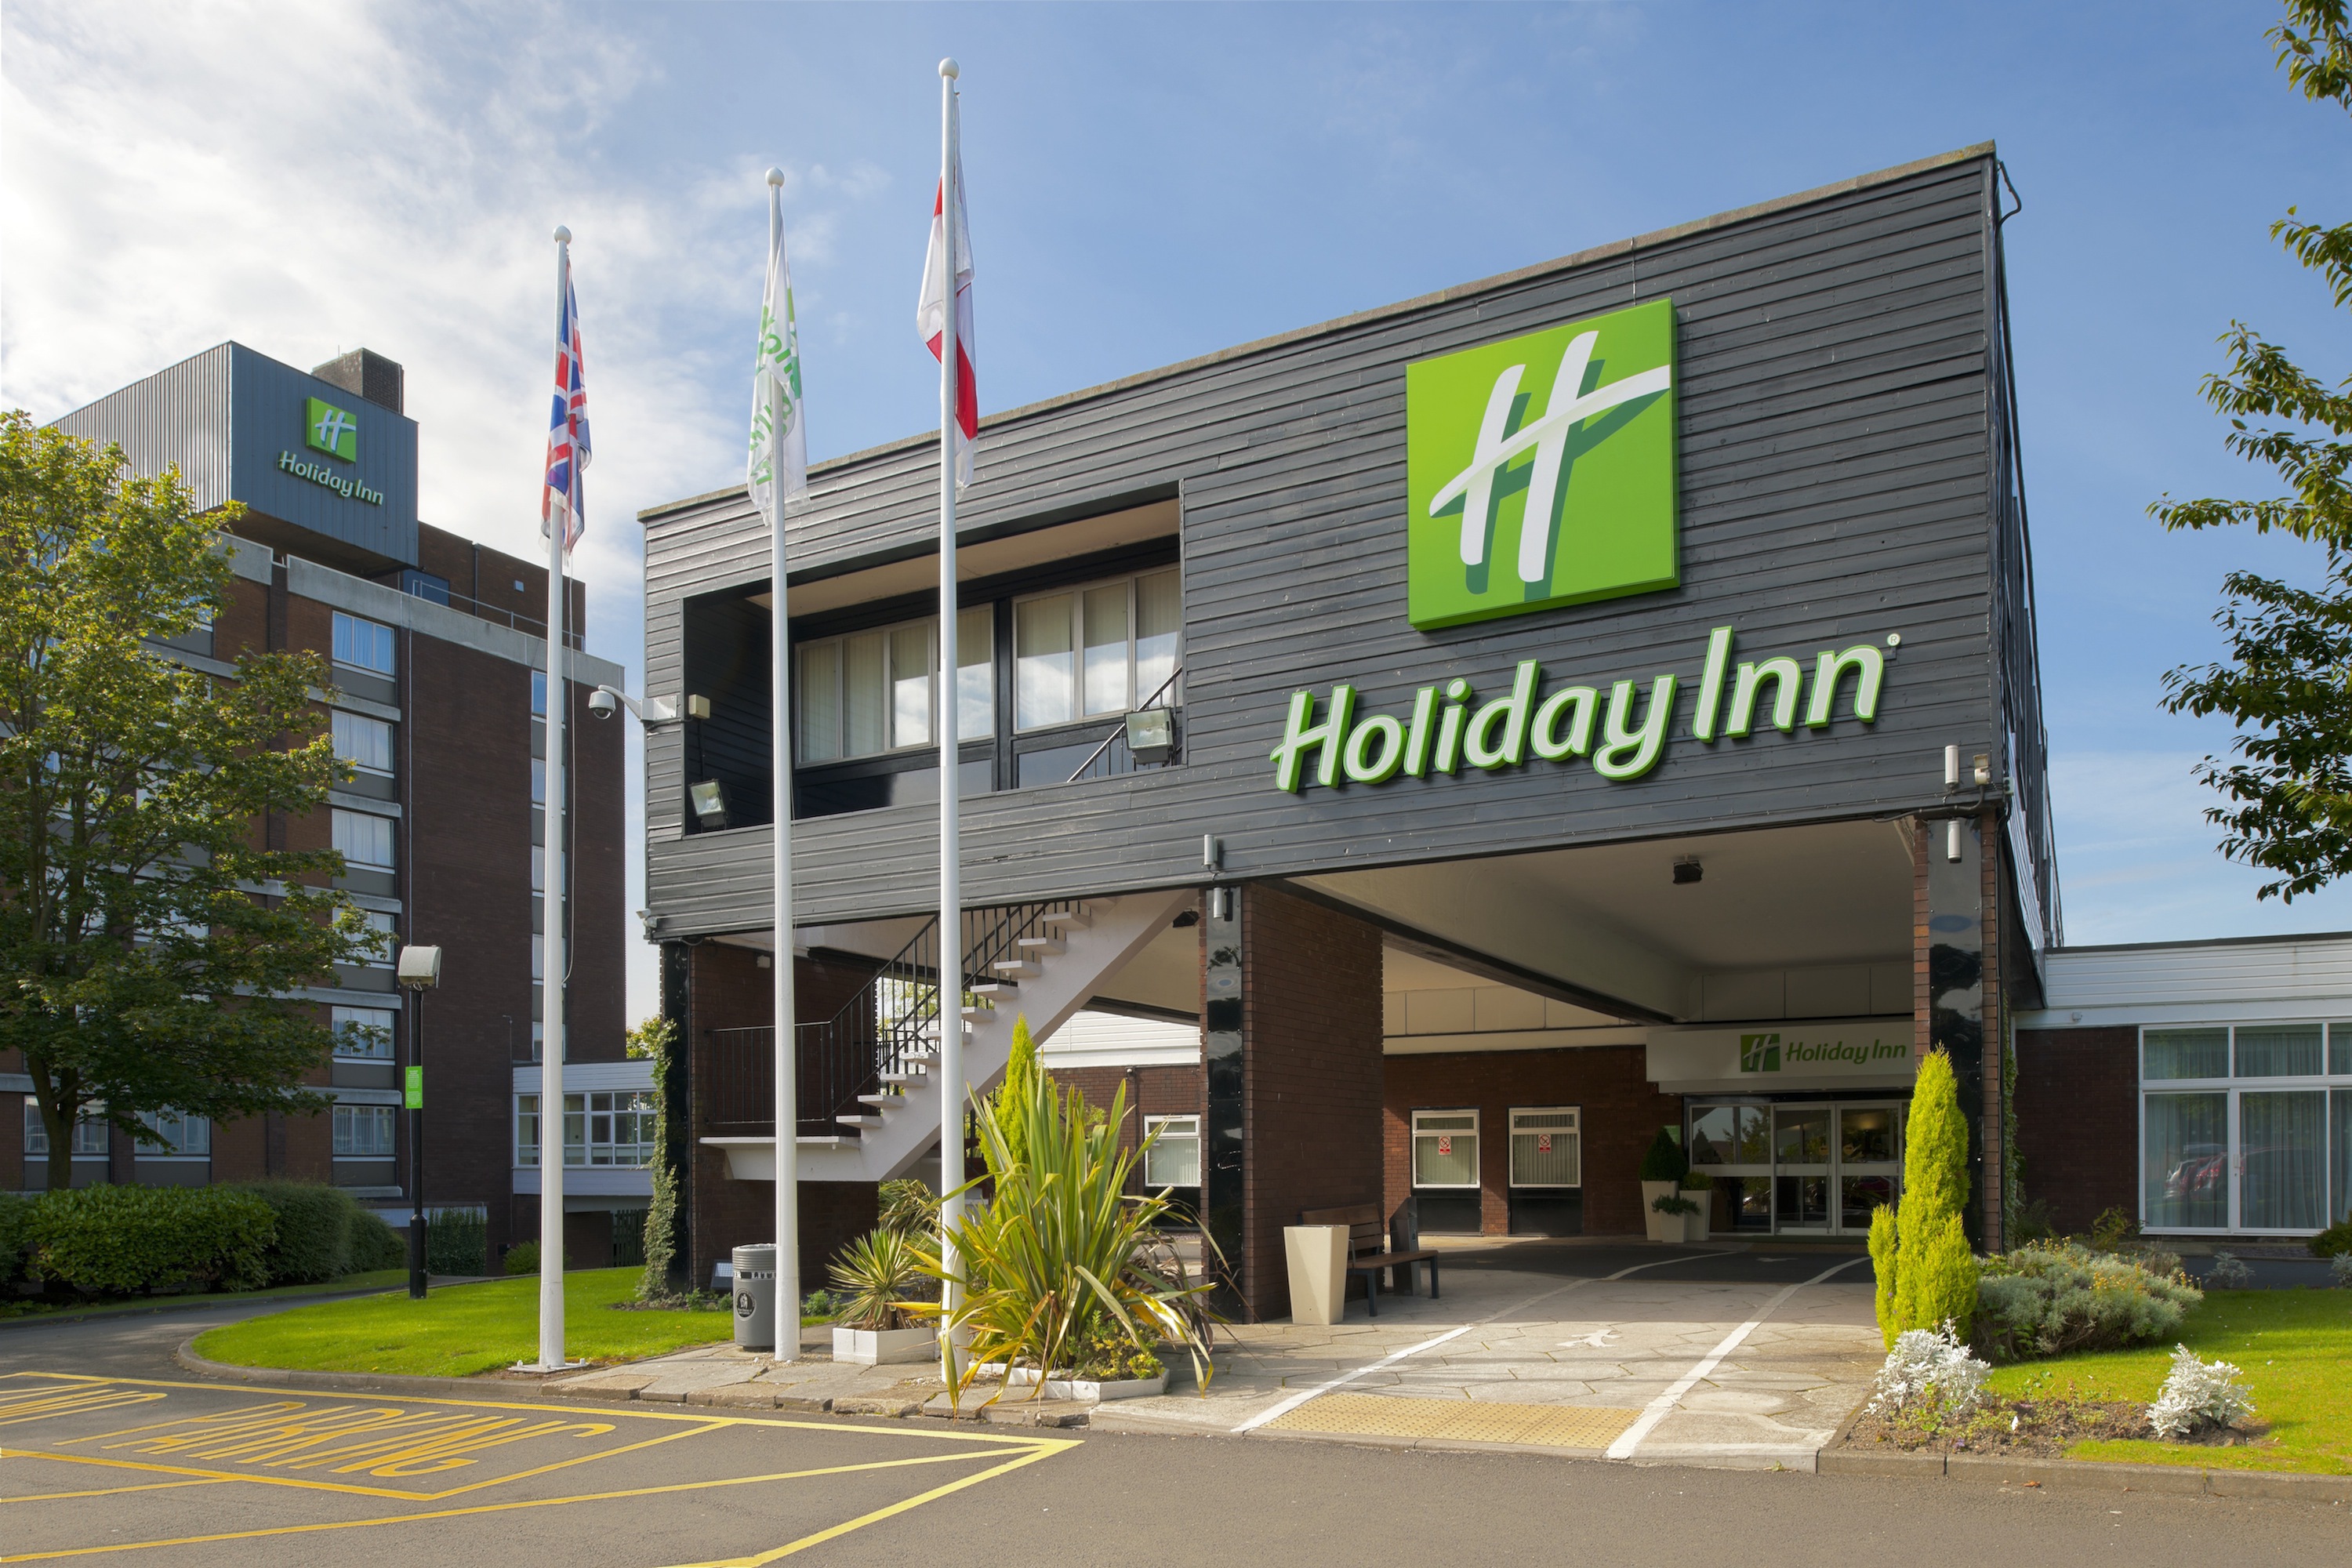 Photo of Holiday Inn Washington, Washington, United Kingdom